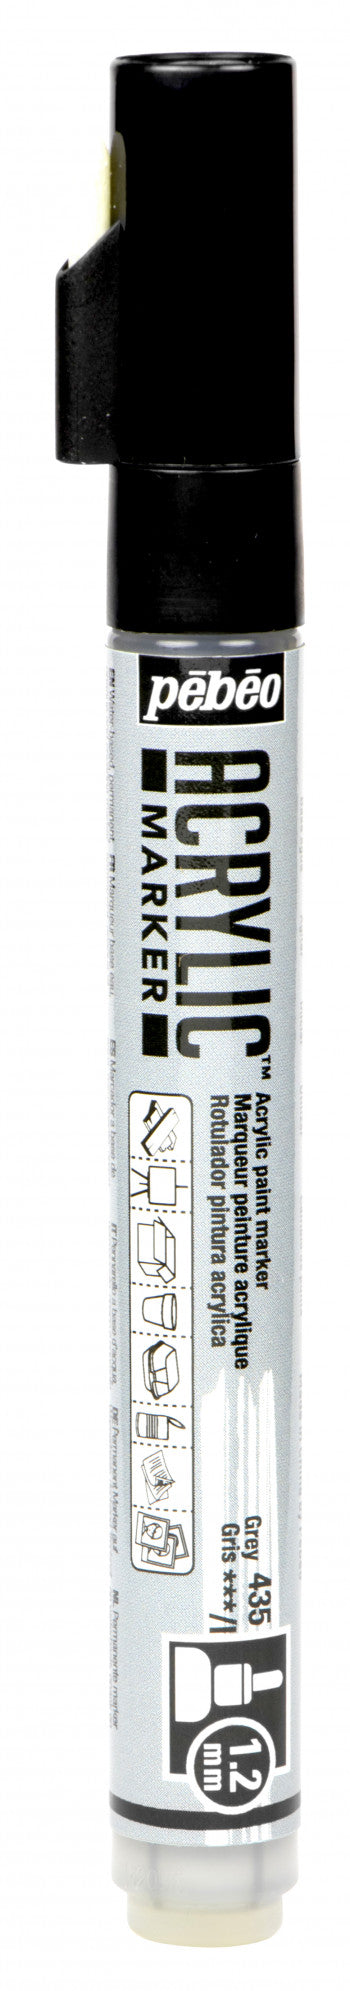 Acrylic Marker 1.2mm Pebeo Gray